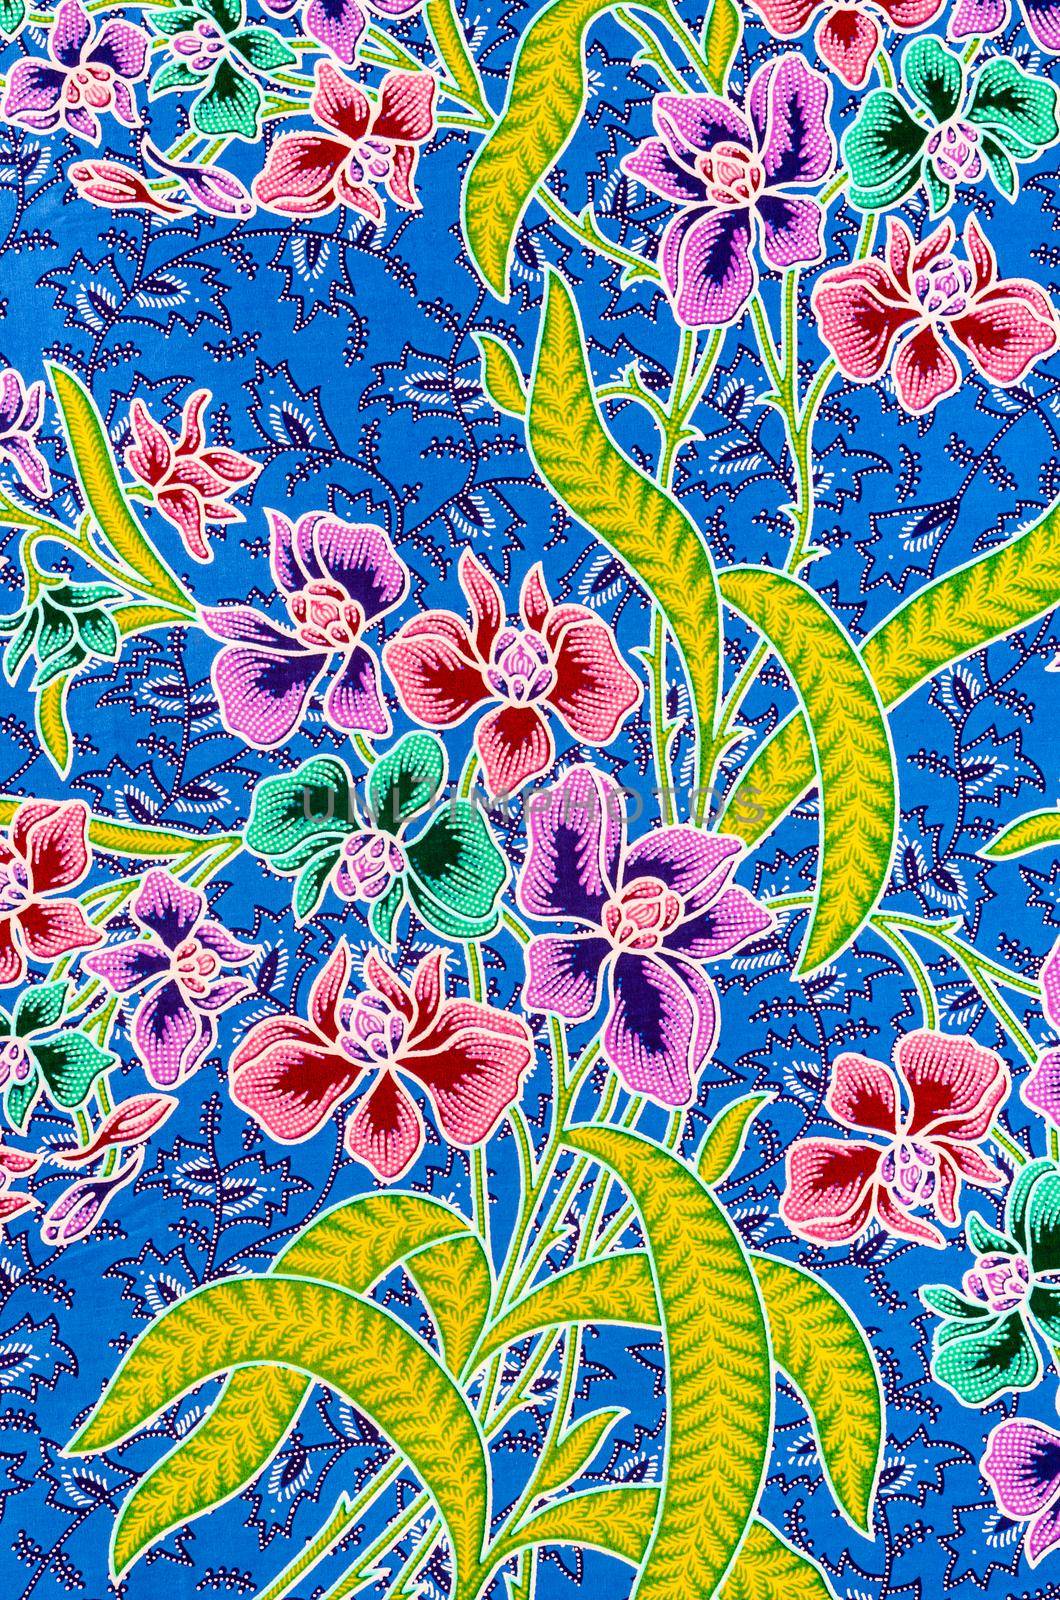 The beautiful of art Batik textile pattern. by Gamjai